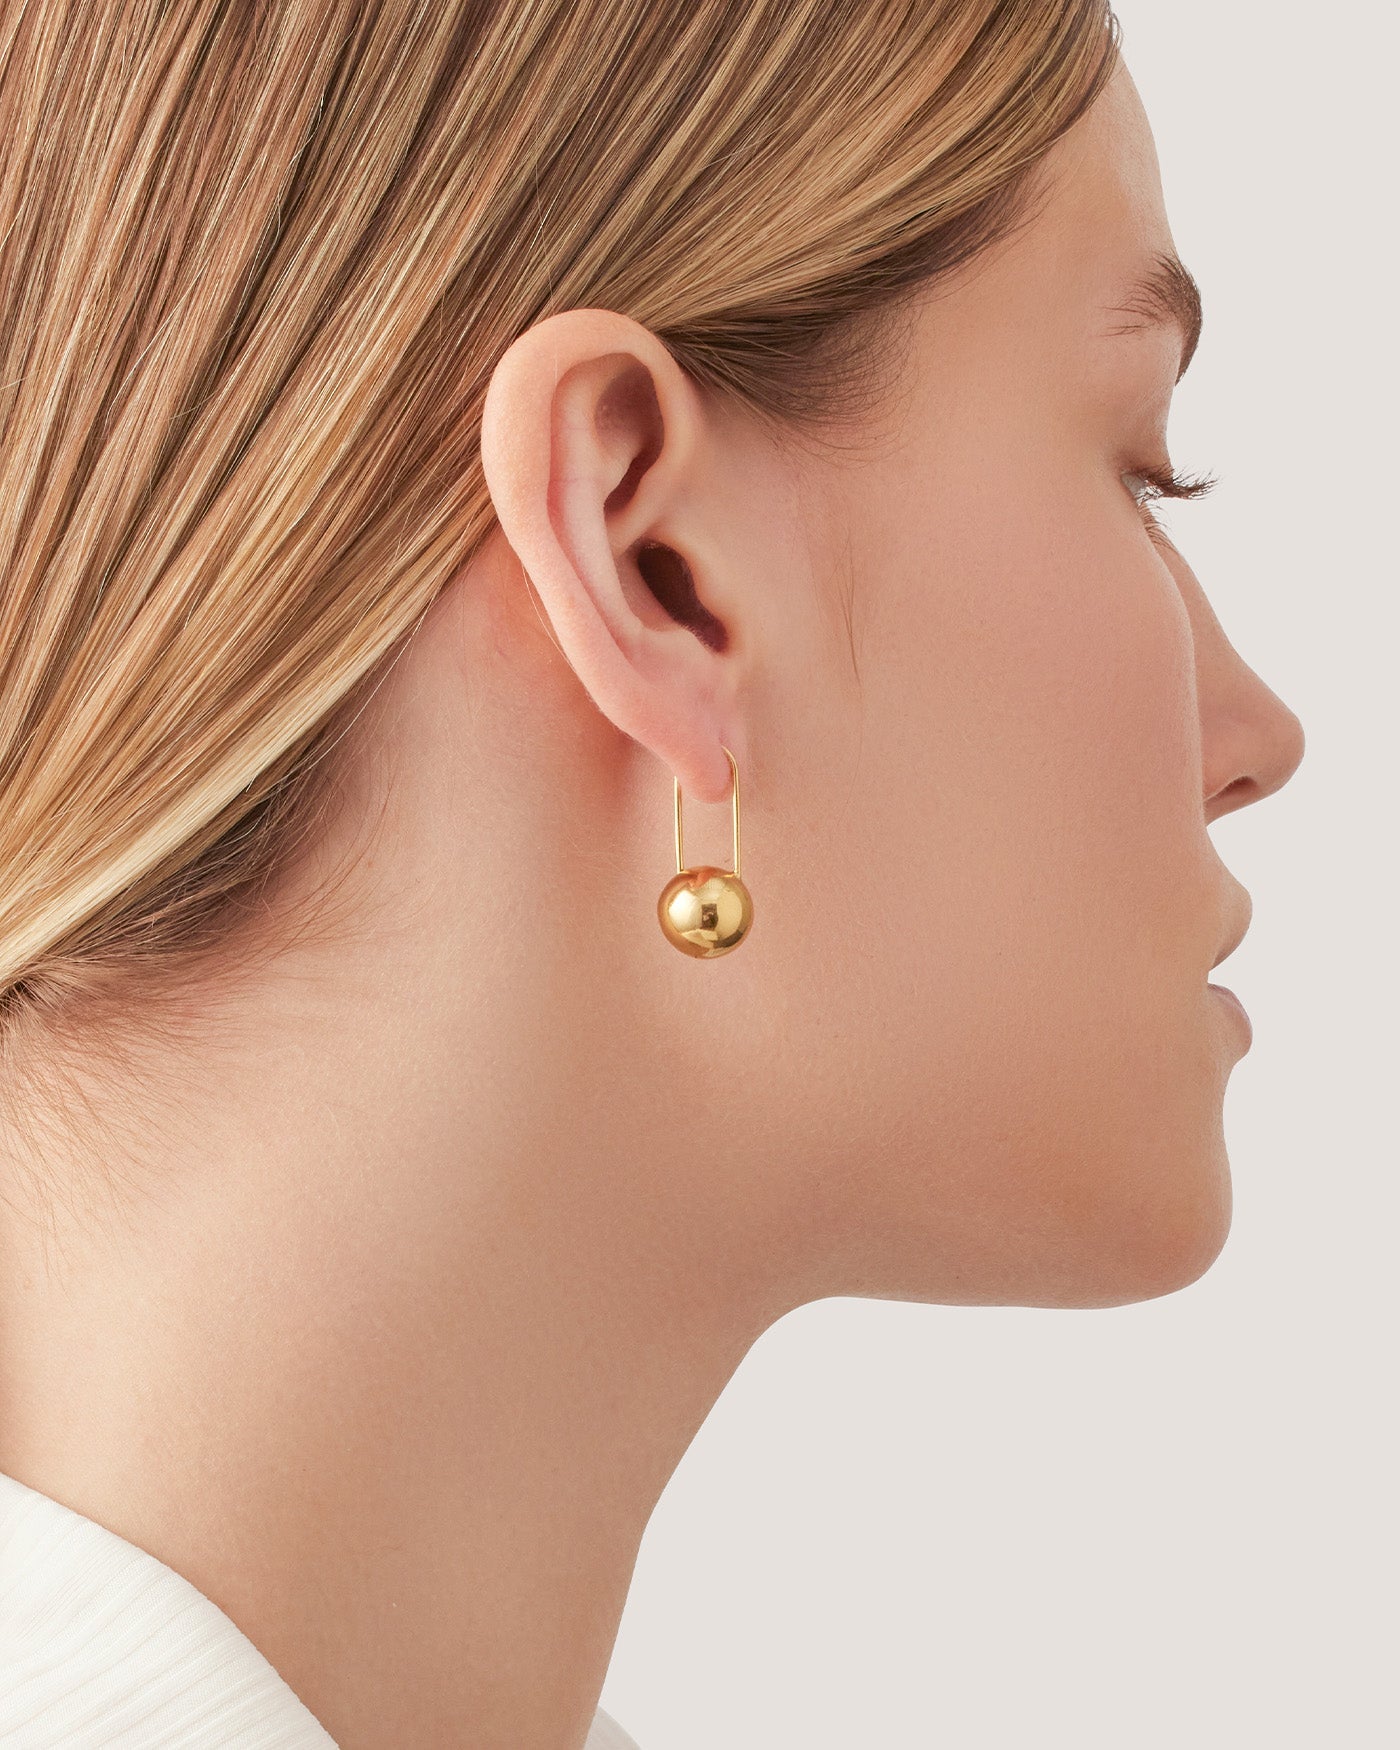 Celeste Earrings